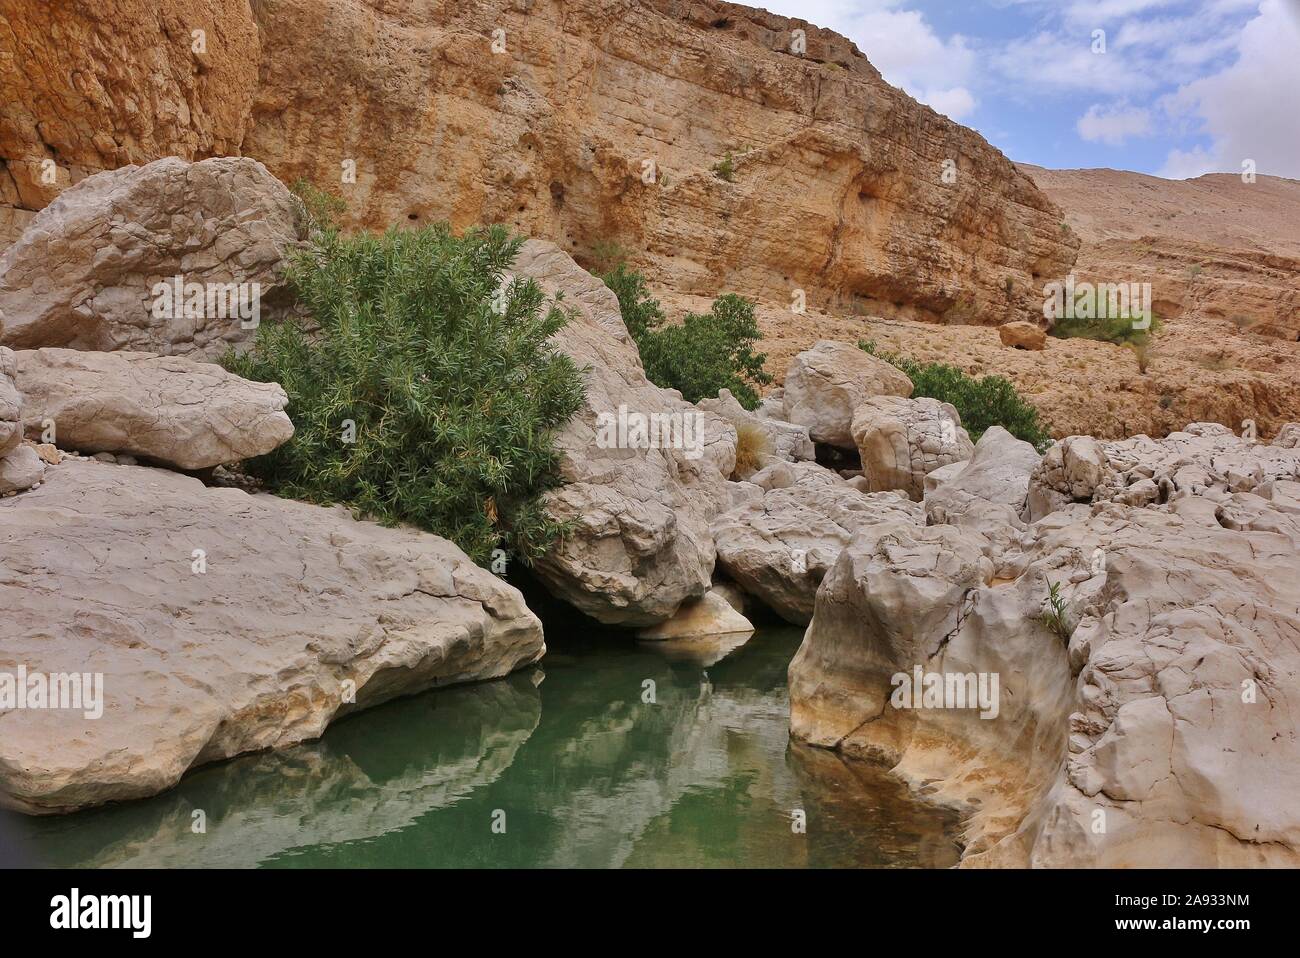 Wadi Bani Khalid: the upper part of the beautiful canyon Stock Photo